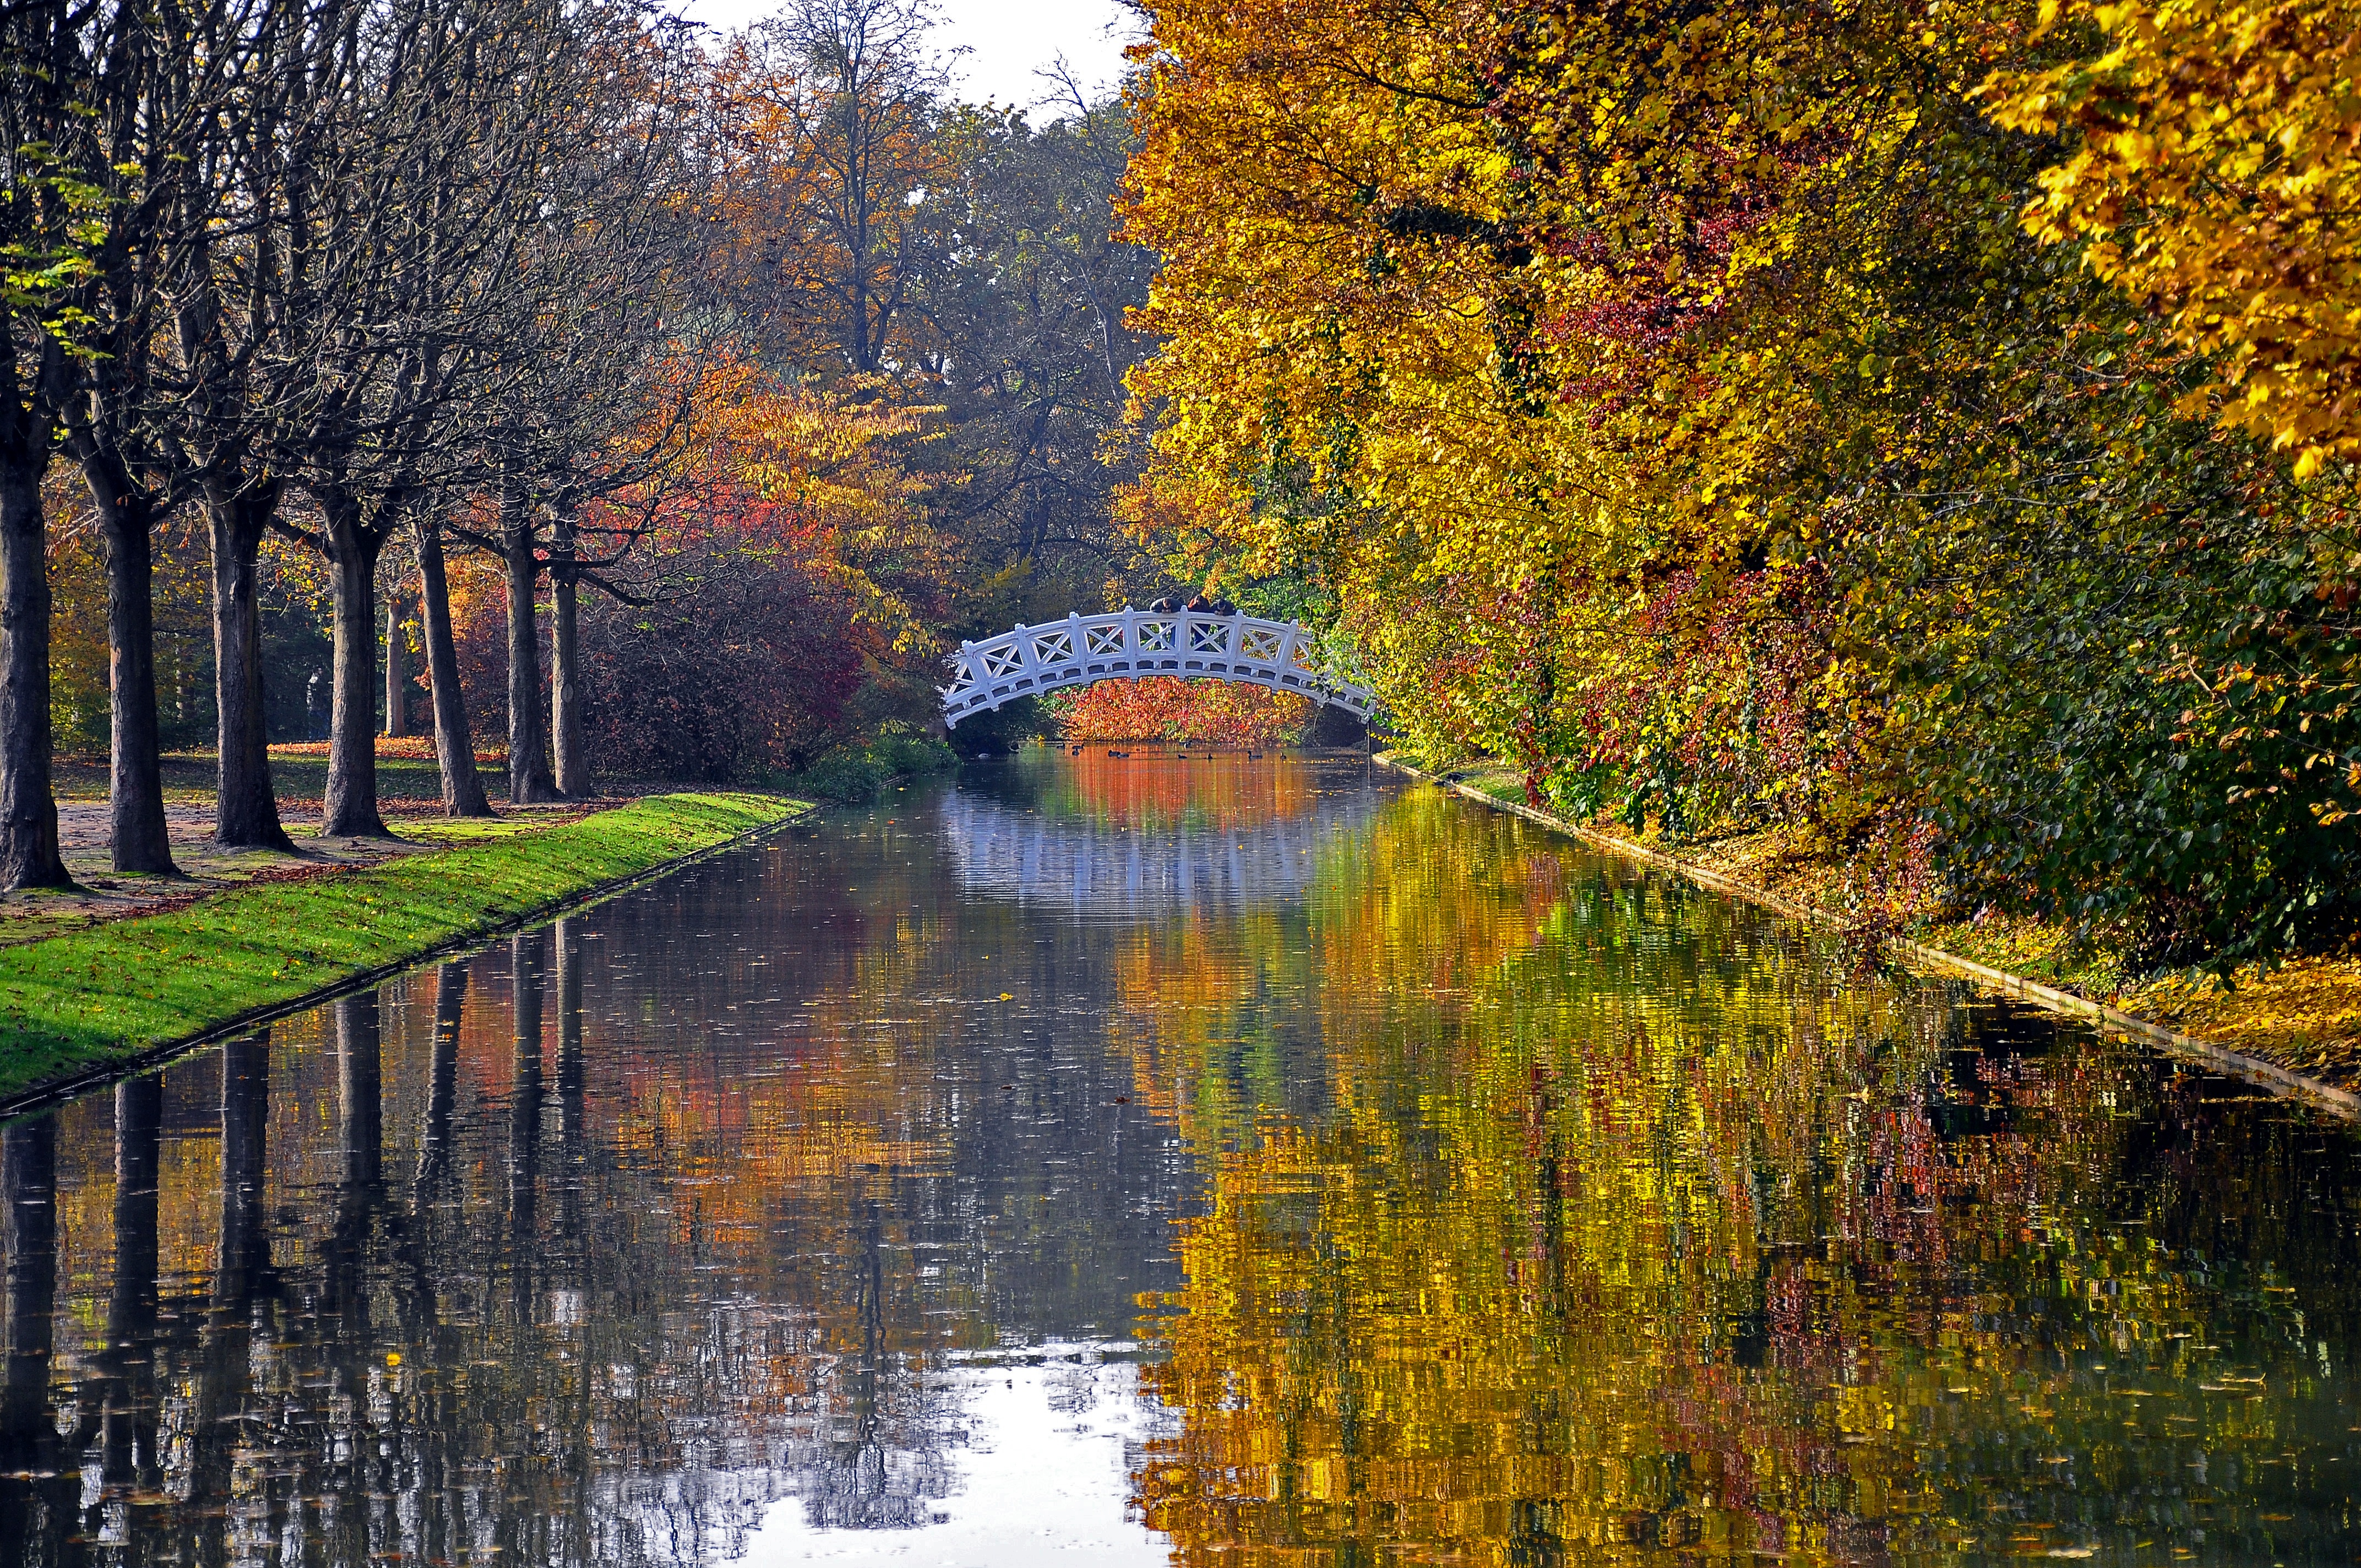 rivers, bridge, autumn, nature, trees, reflection, park